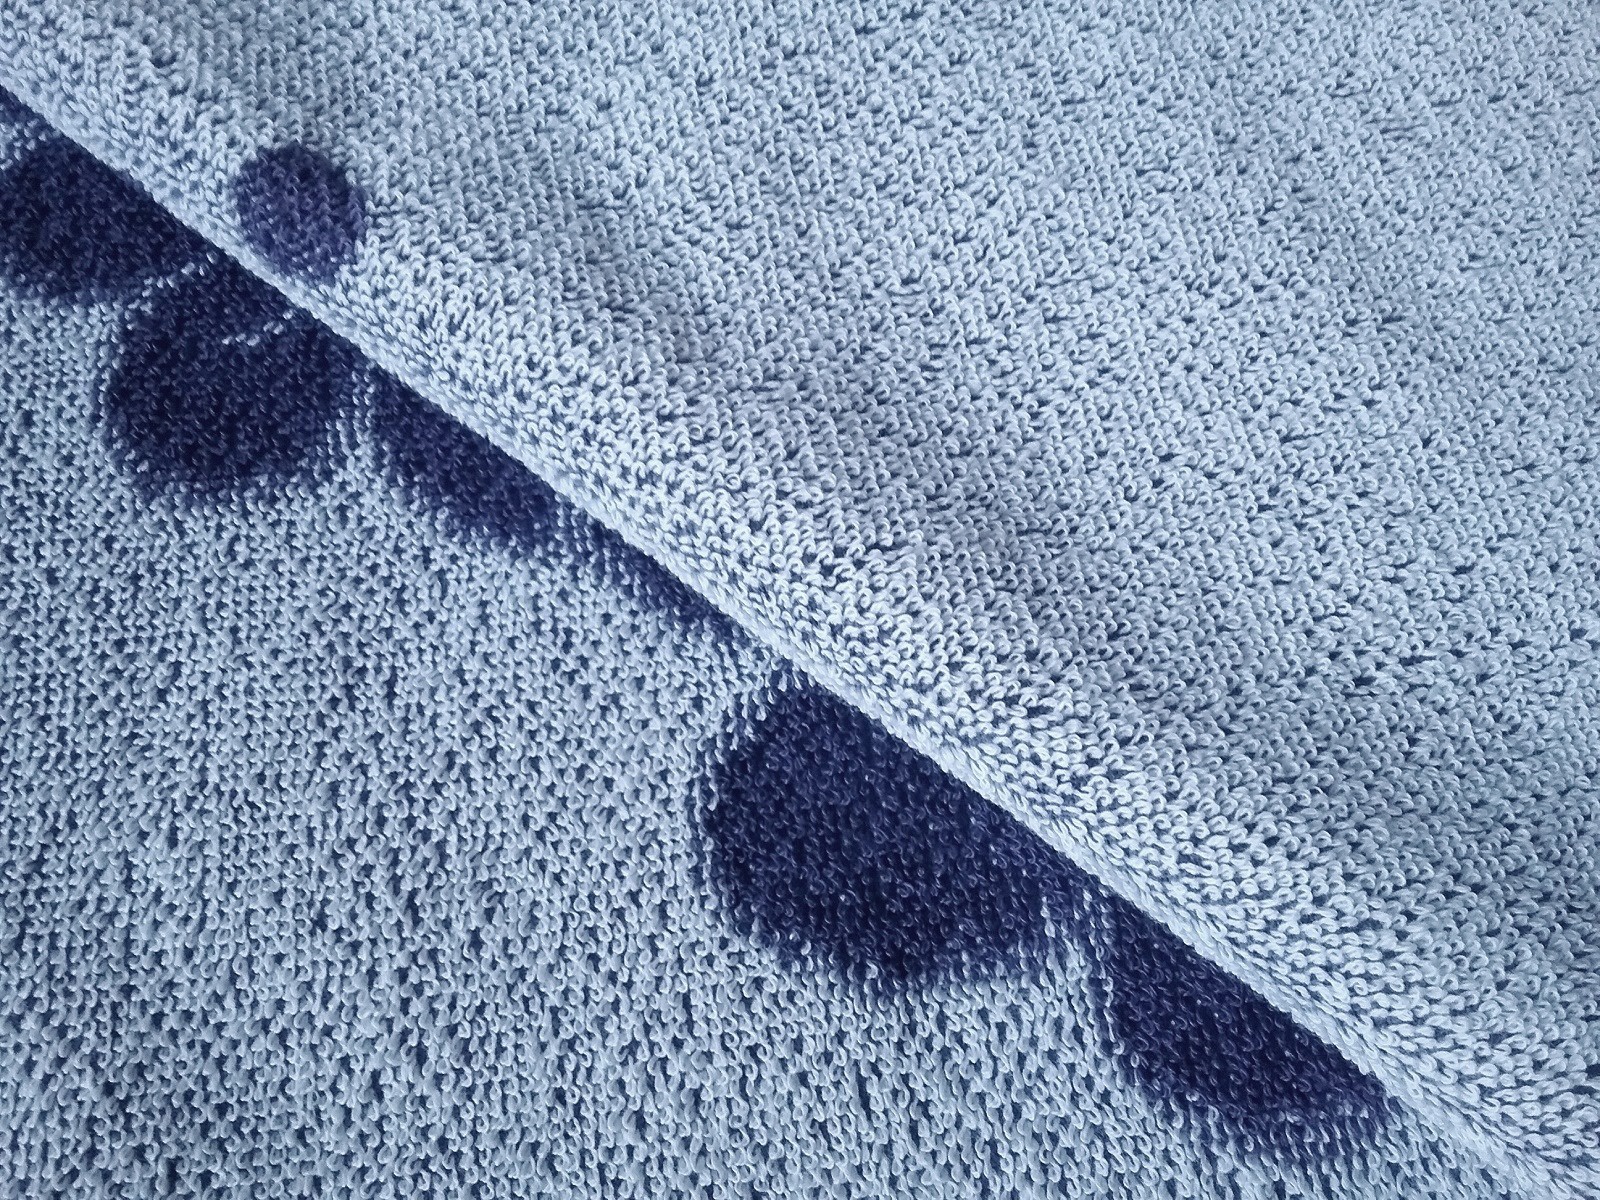 фото Полотенце детское Речицкий текстиль Олененок 67х150, фиолетовый